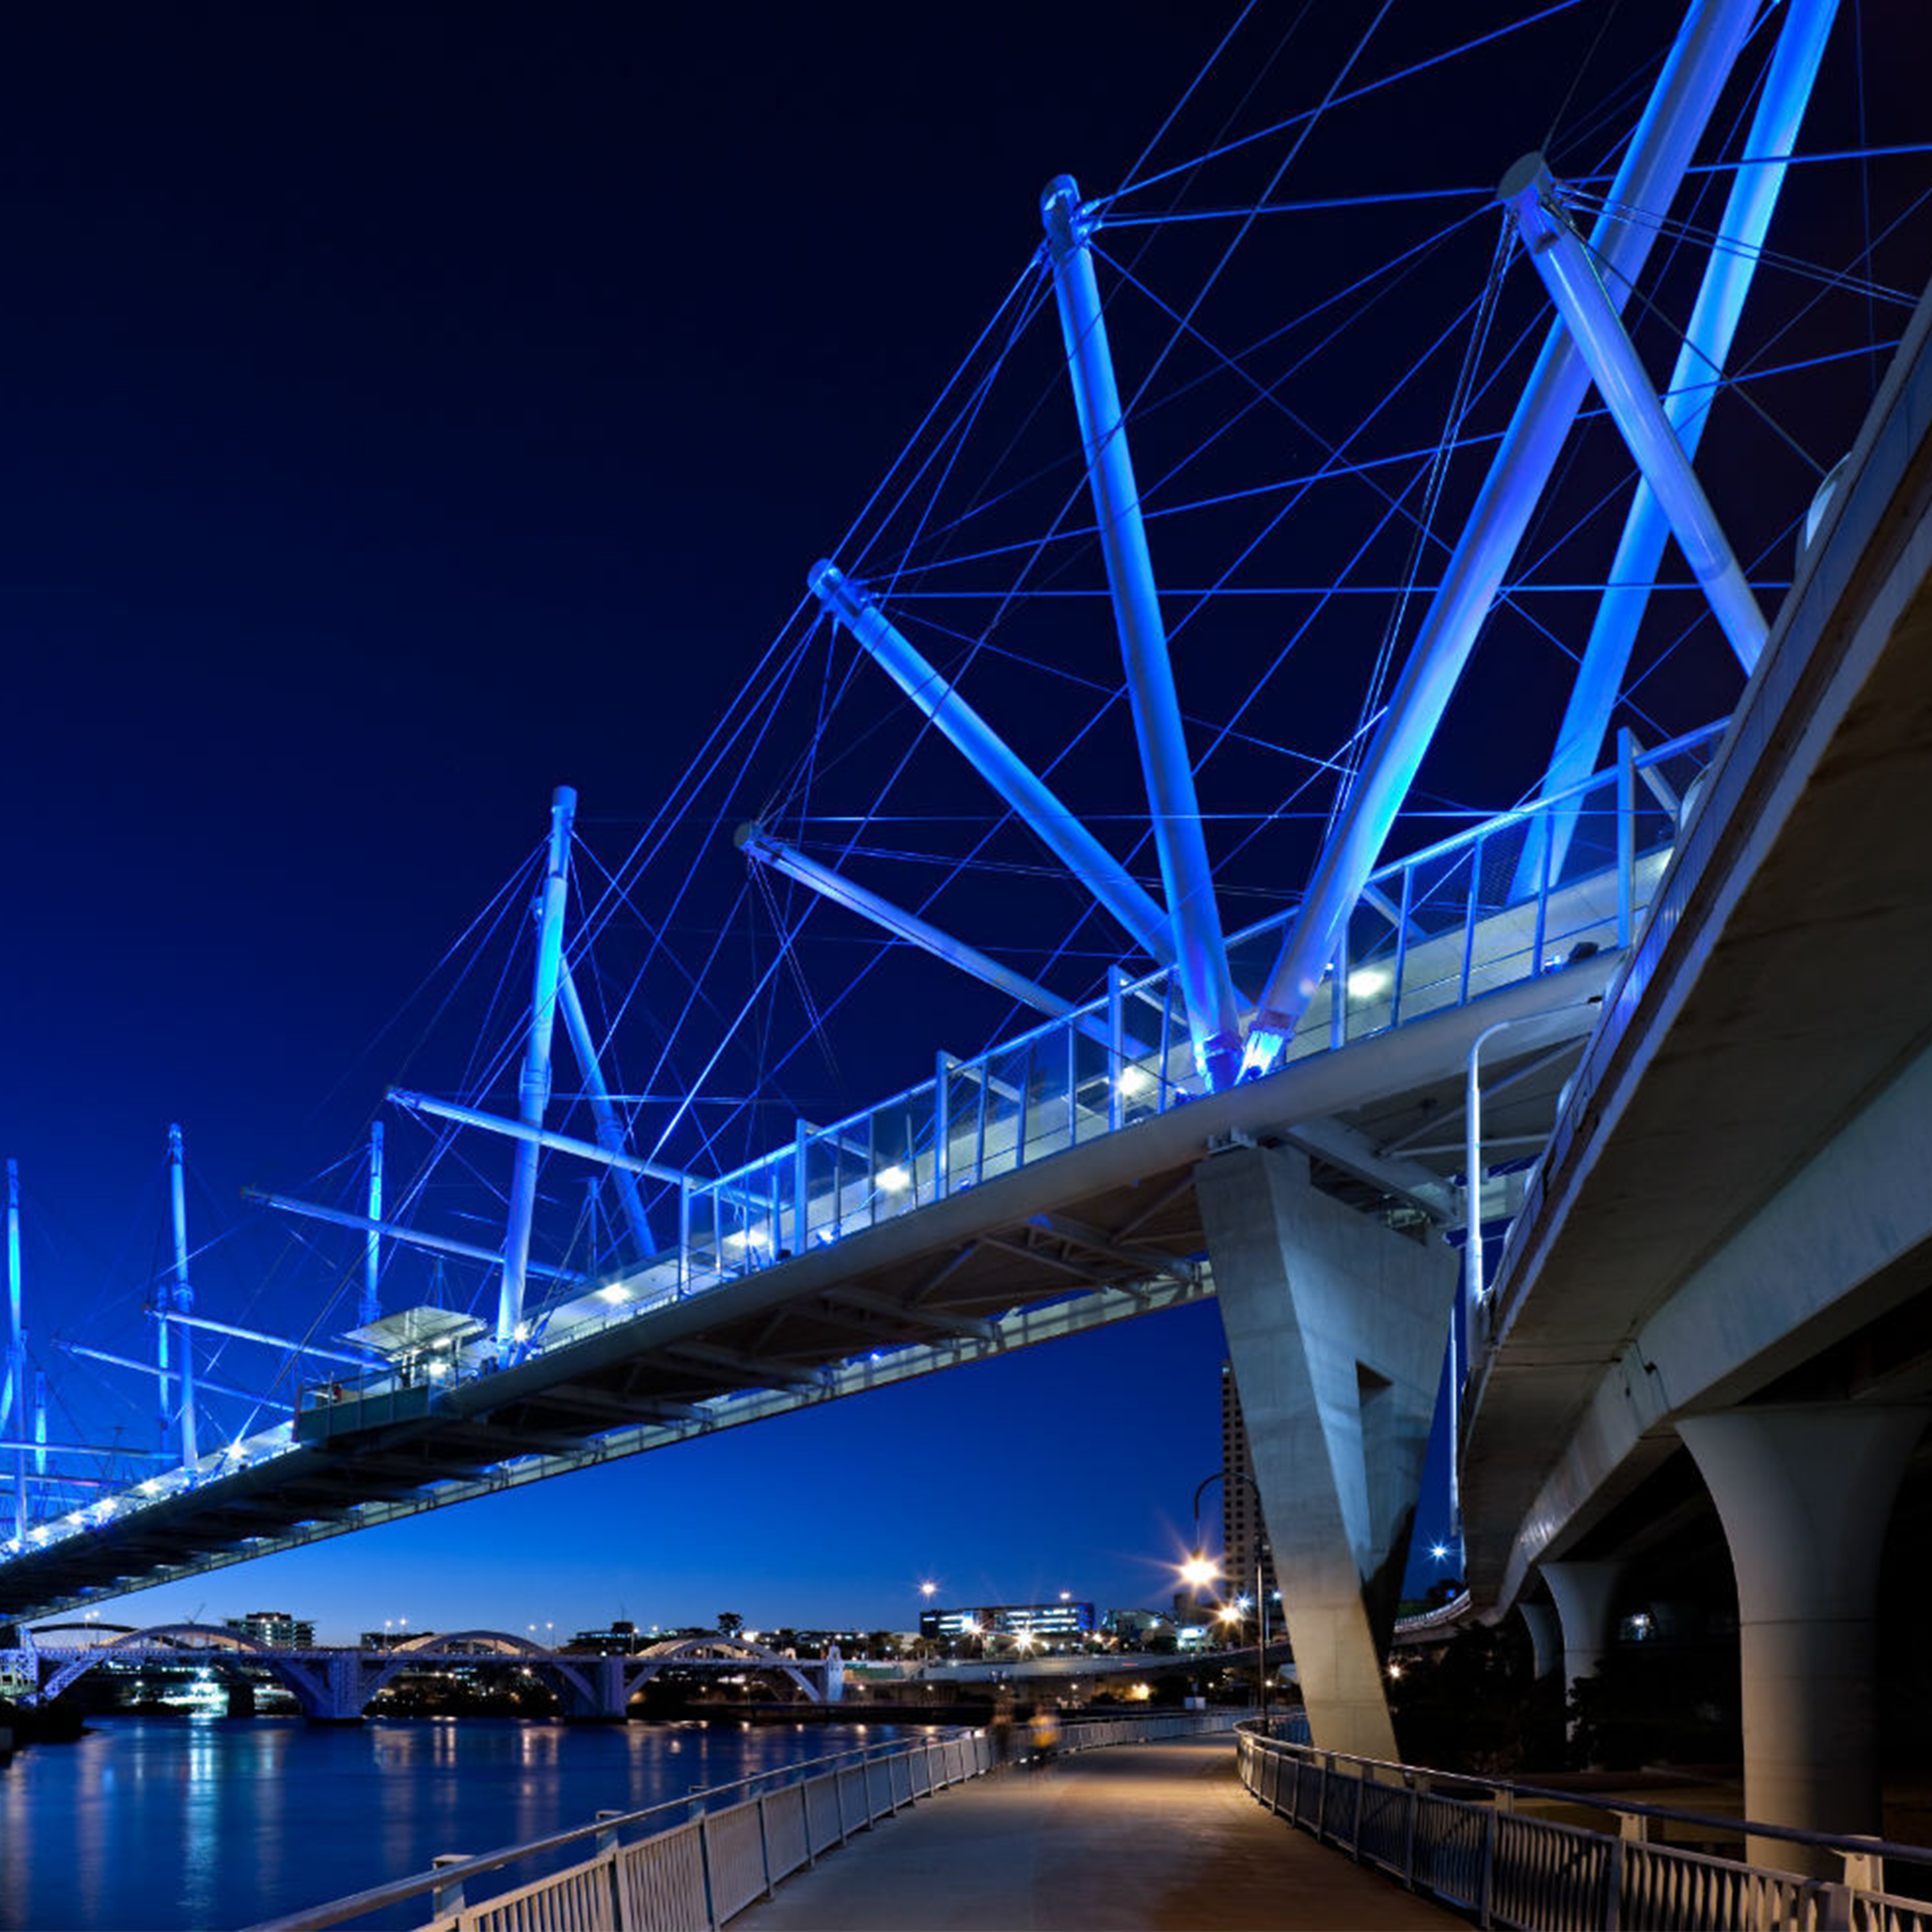 Light it up teal for Trigeminal Neuralgia 2021 - Kurilpa Bridge Brisbane